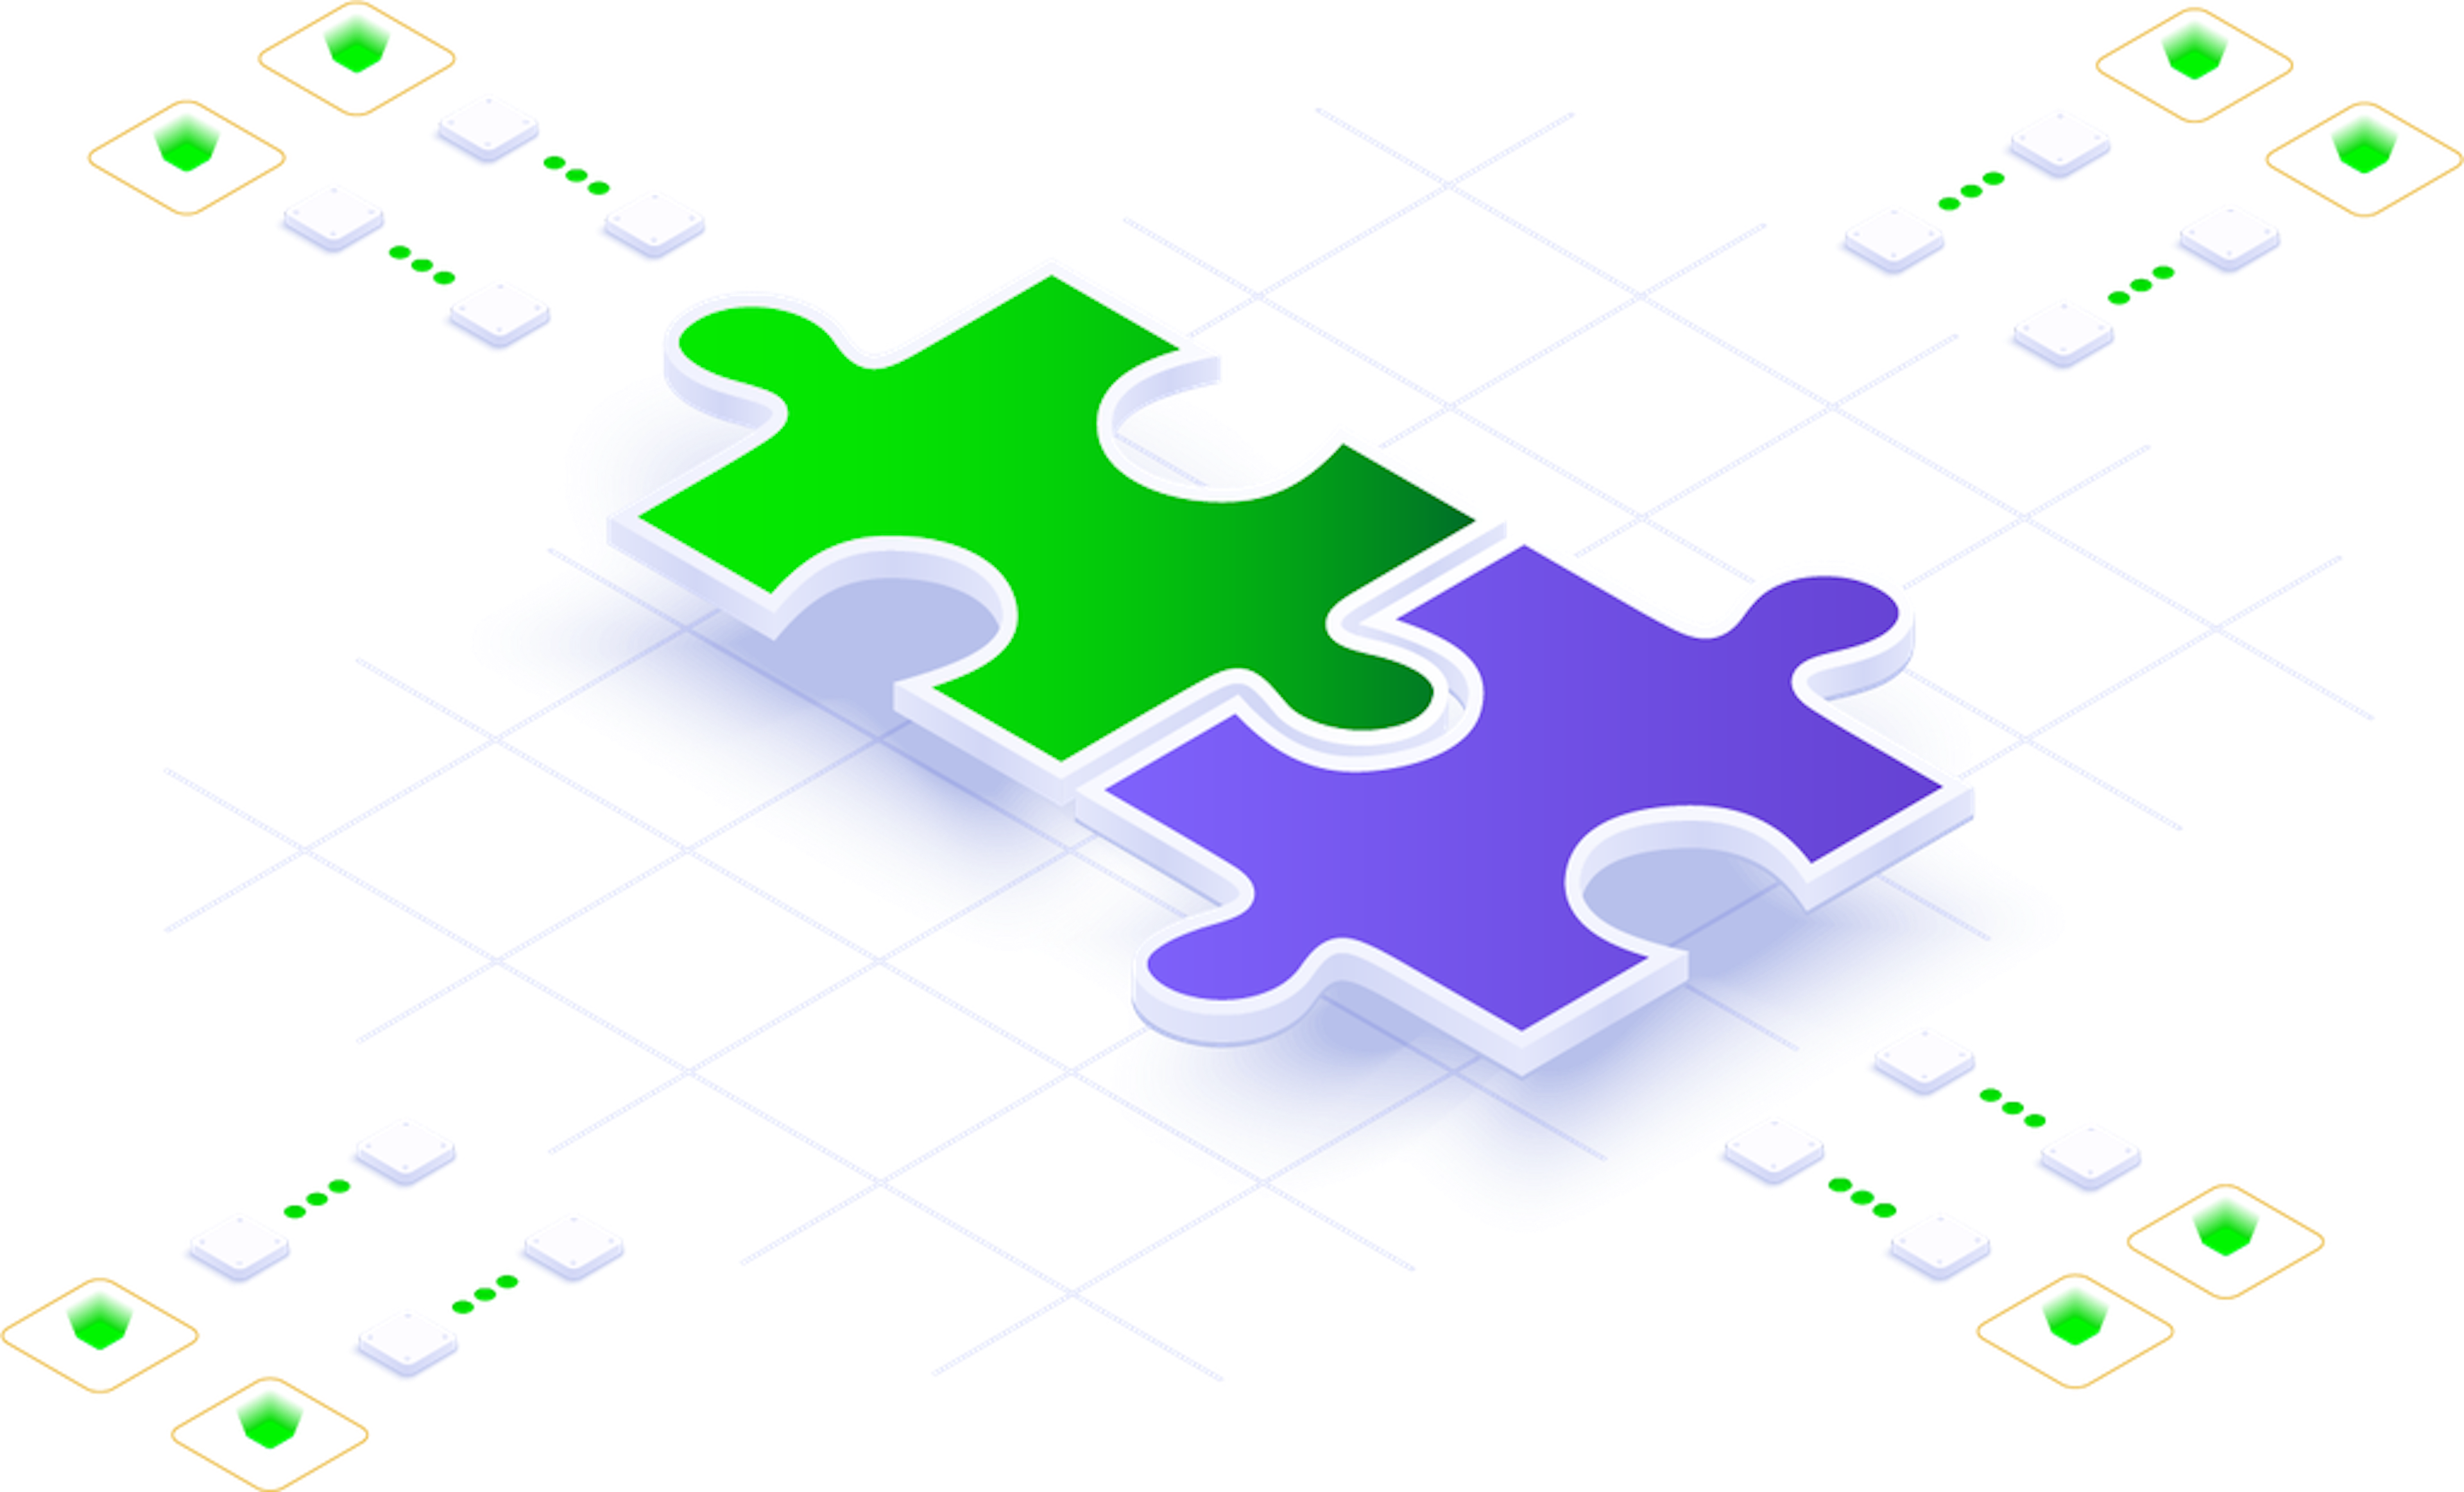 puzzle pieces connecting tech integration